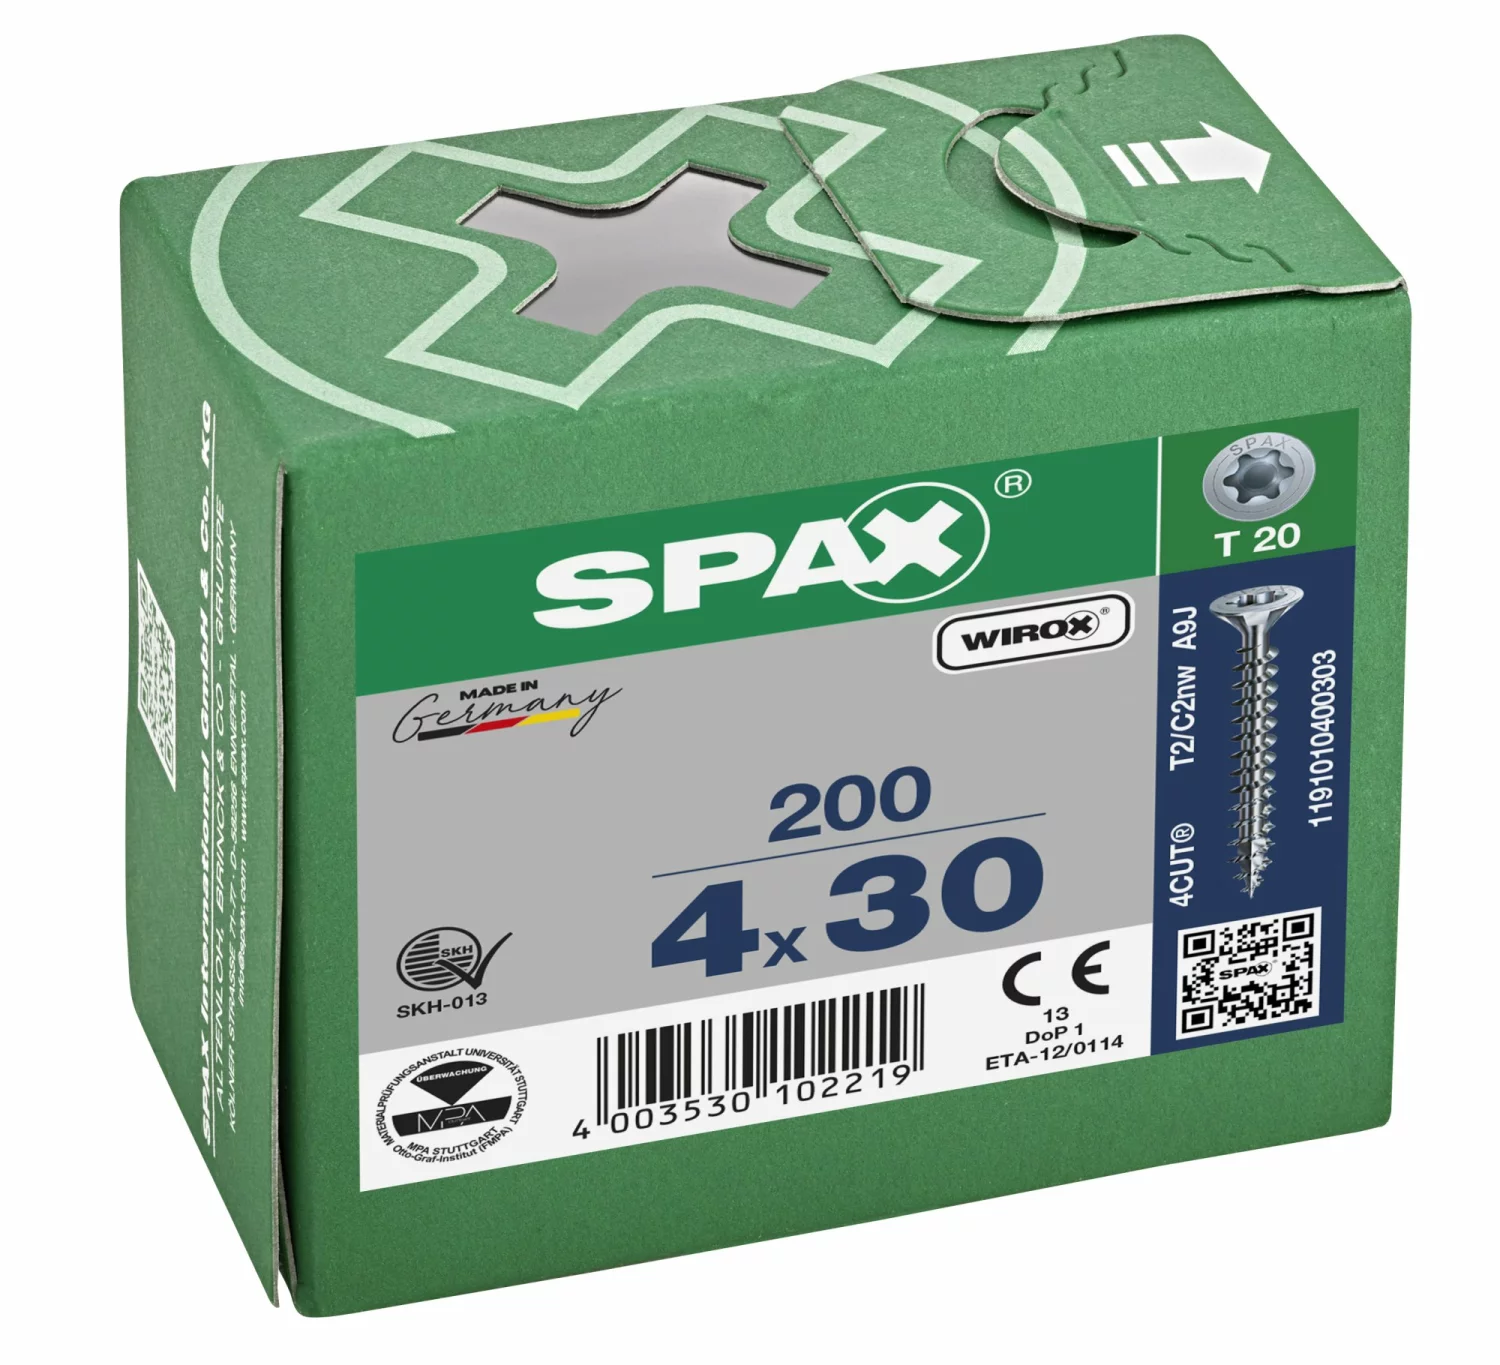 SPAX 1191010400303 Universele schroef, Verzonken kop, 4 x 30, Voldraad, T-STAR plus TX20 - WIROX - 200 stuks